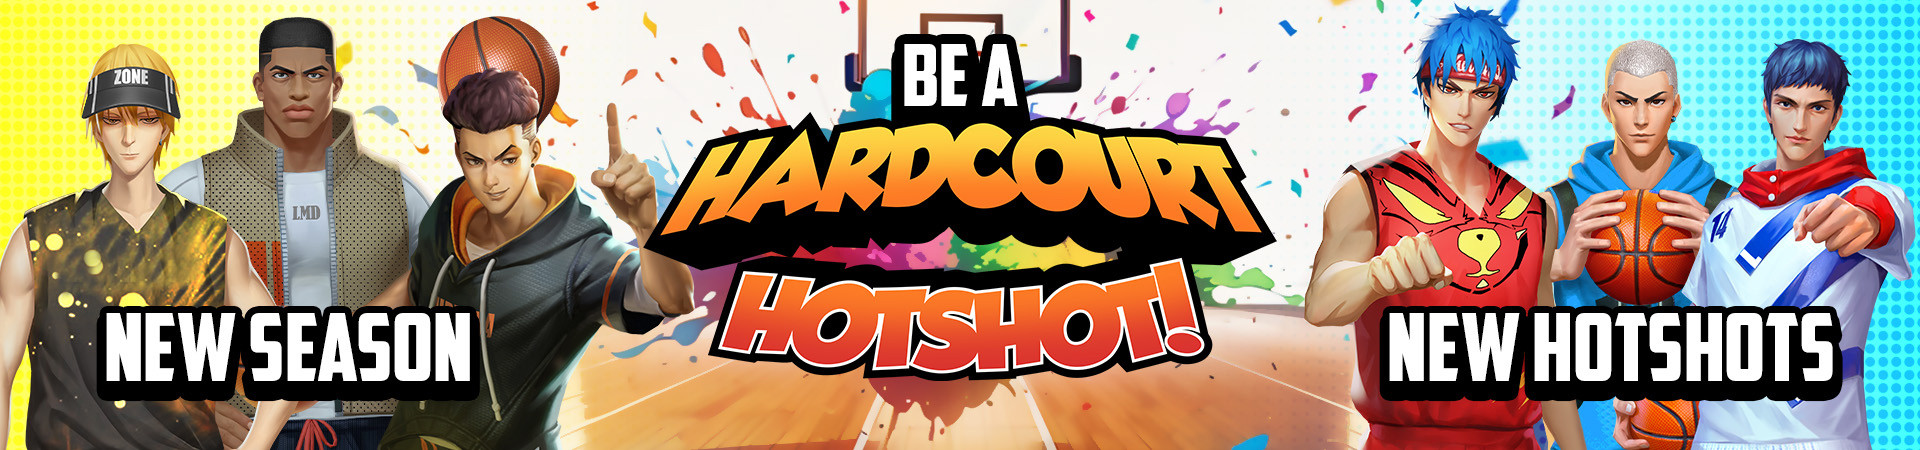 Be the newest Hardcourt Hotshot!  